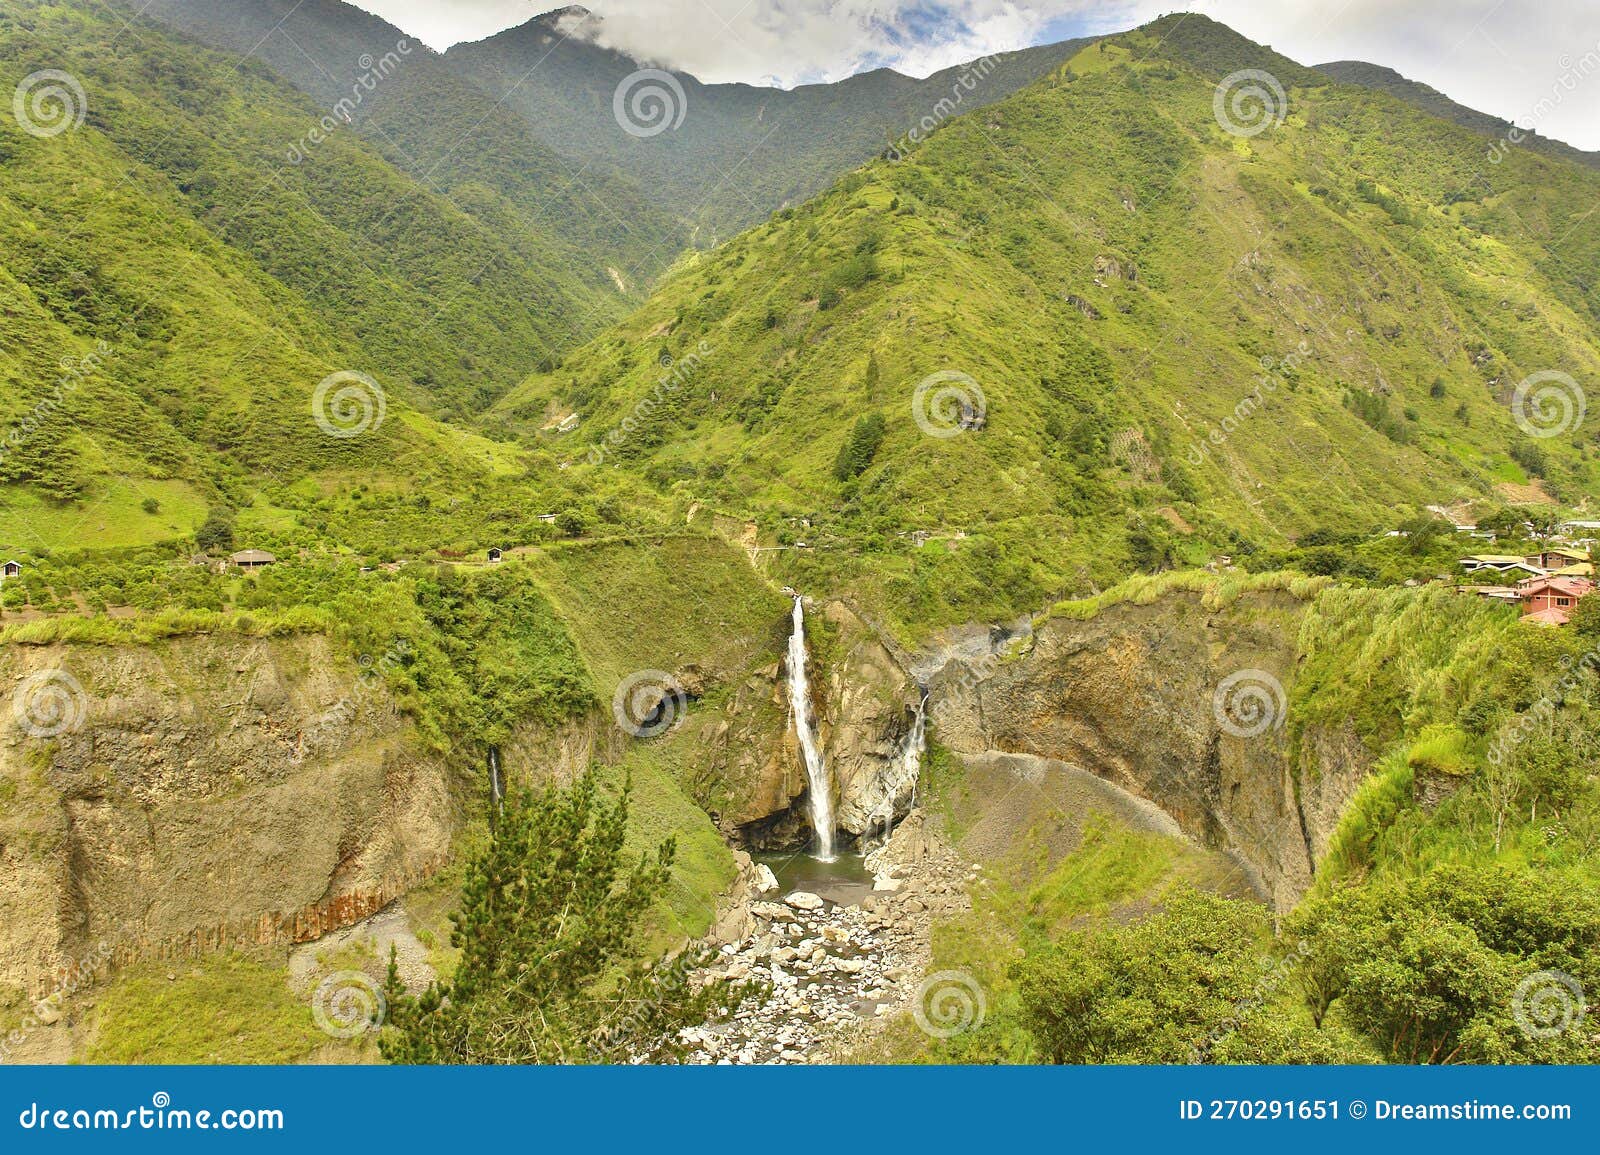 manto de la novia waterfall in ecuador